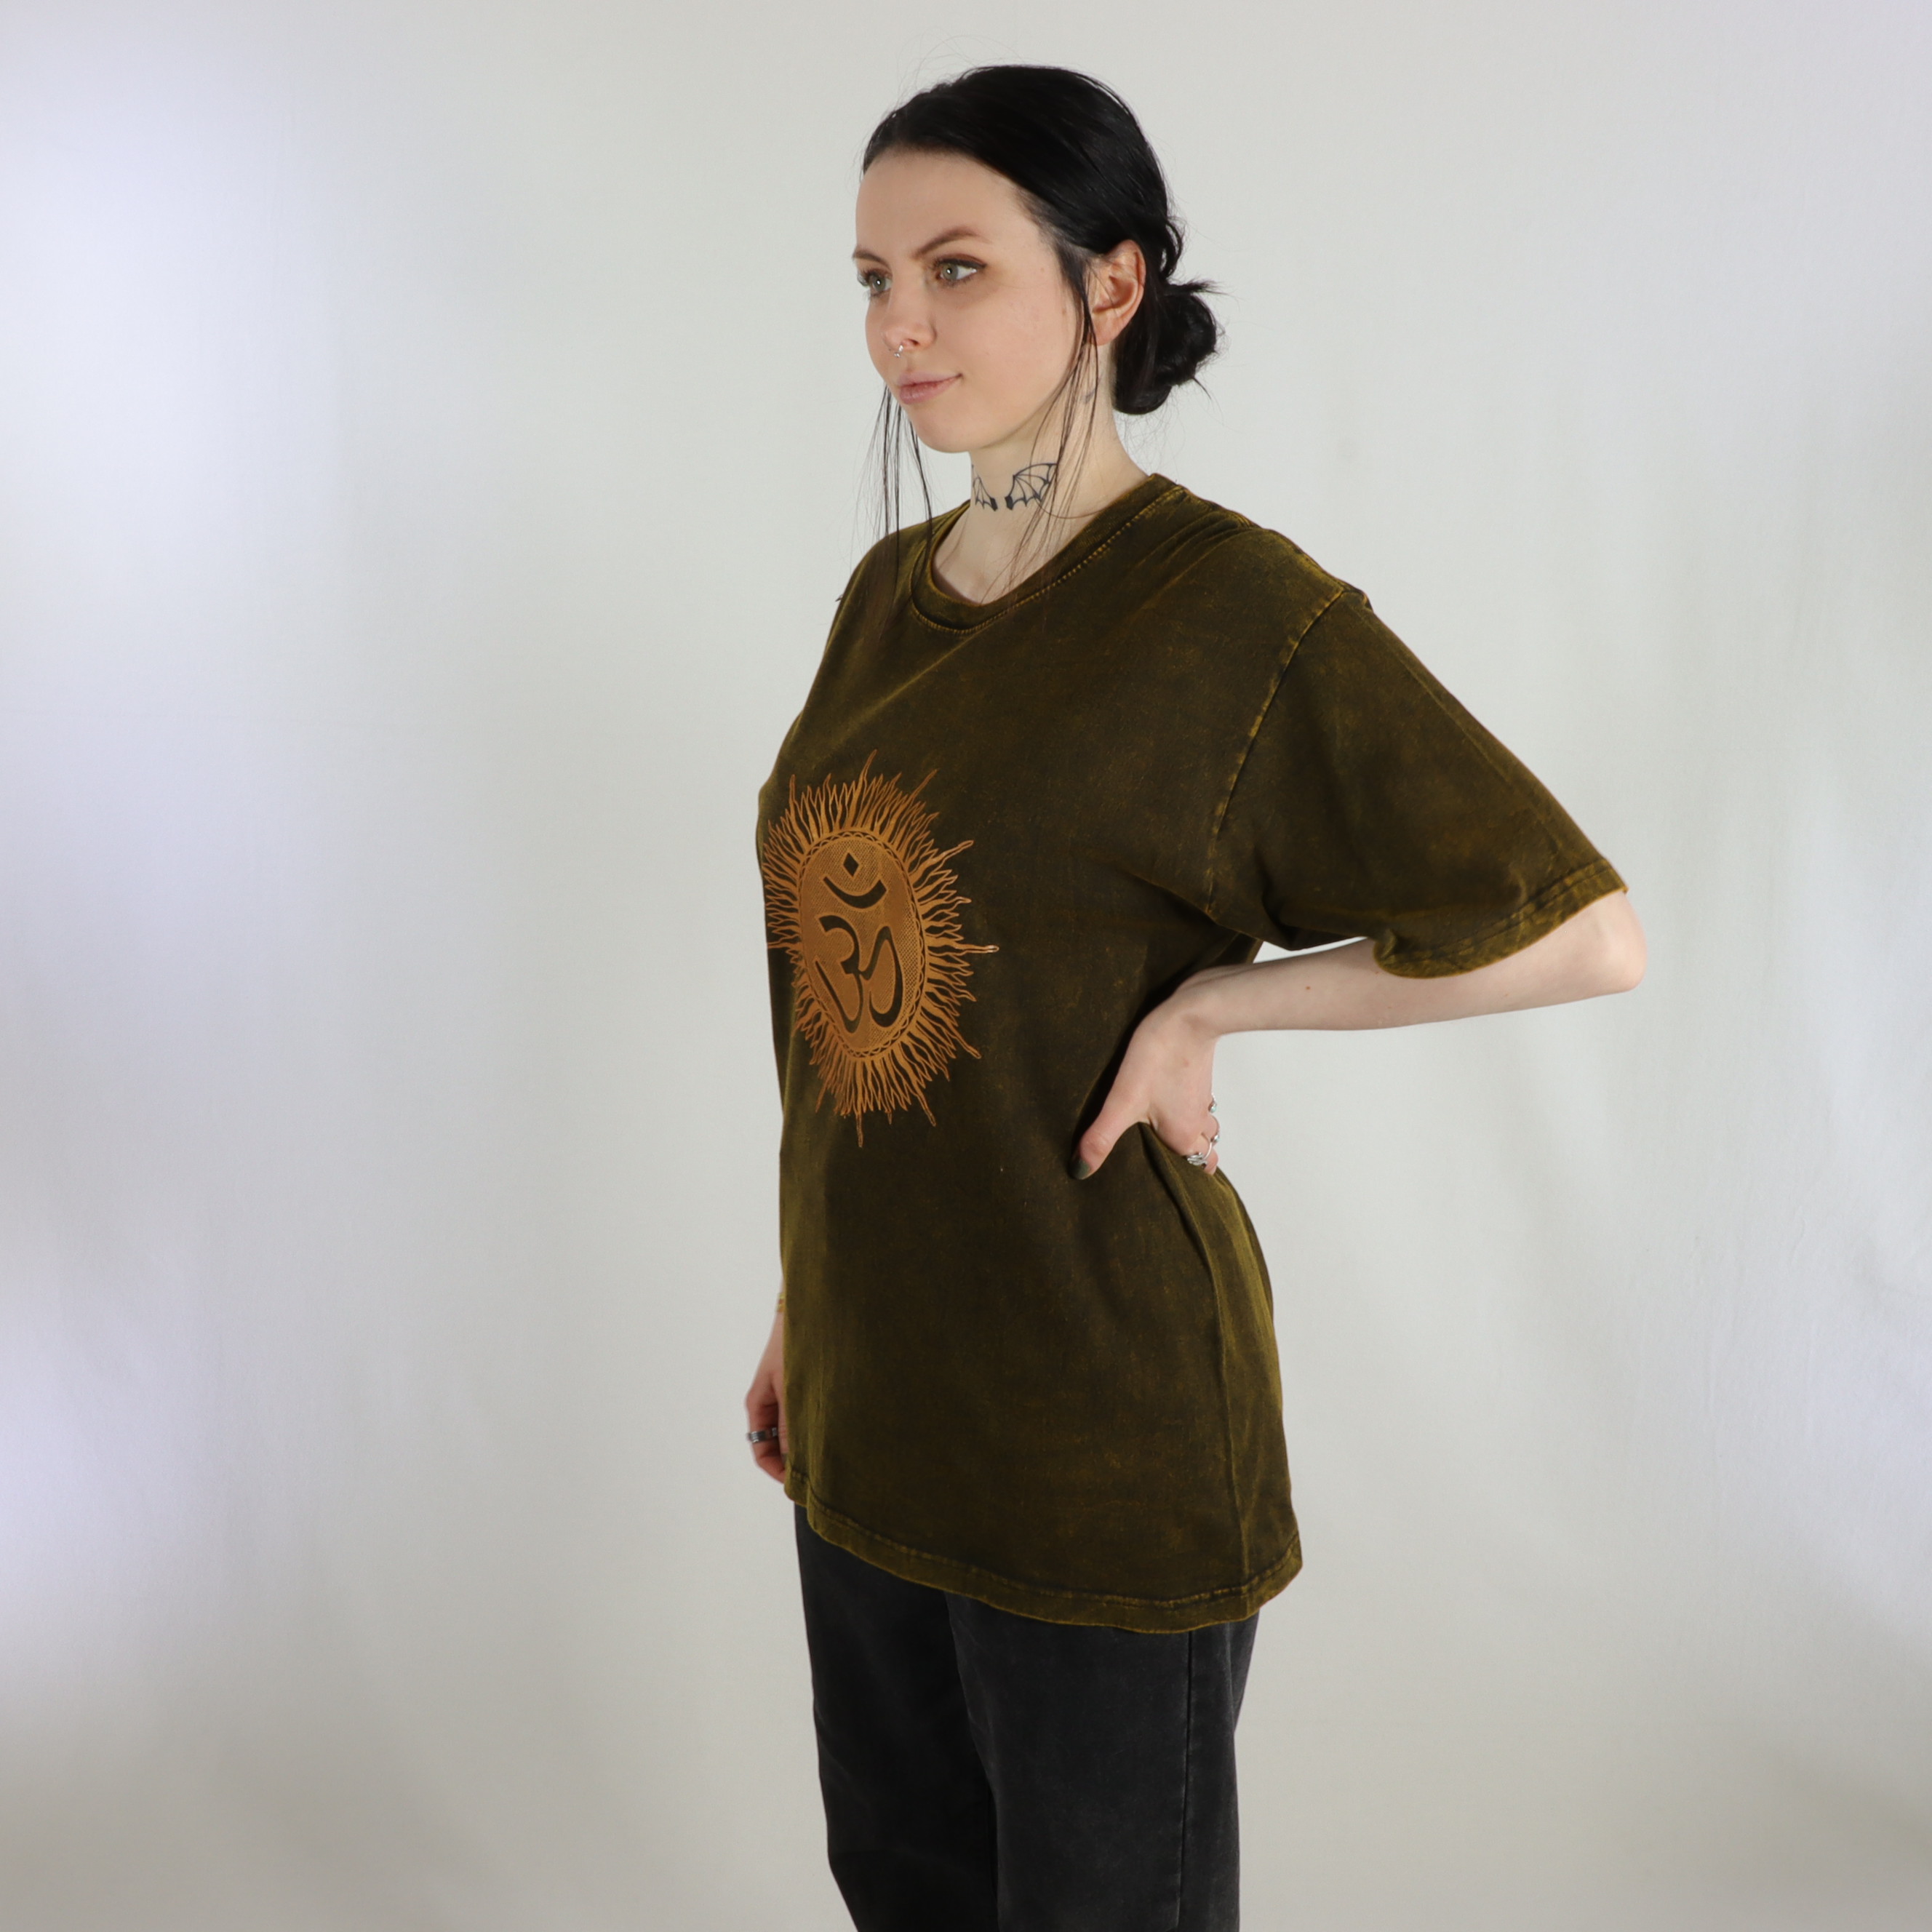 T-Shirt mit großem Om Aufdruck - 100% Baumwolle - im Stonewash Used Look Design - bequem und lässig - Fair gehandelt aus Nepal